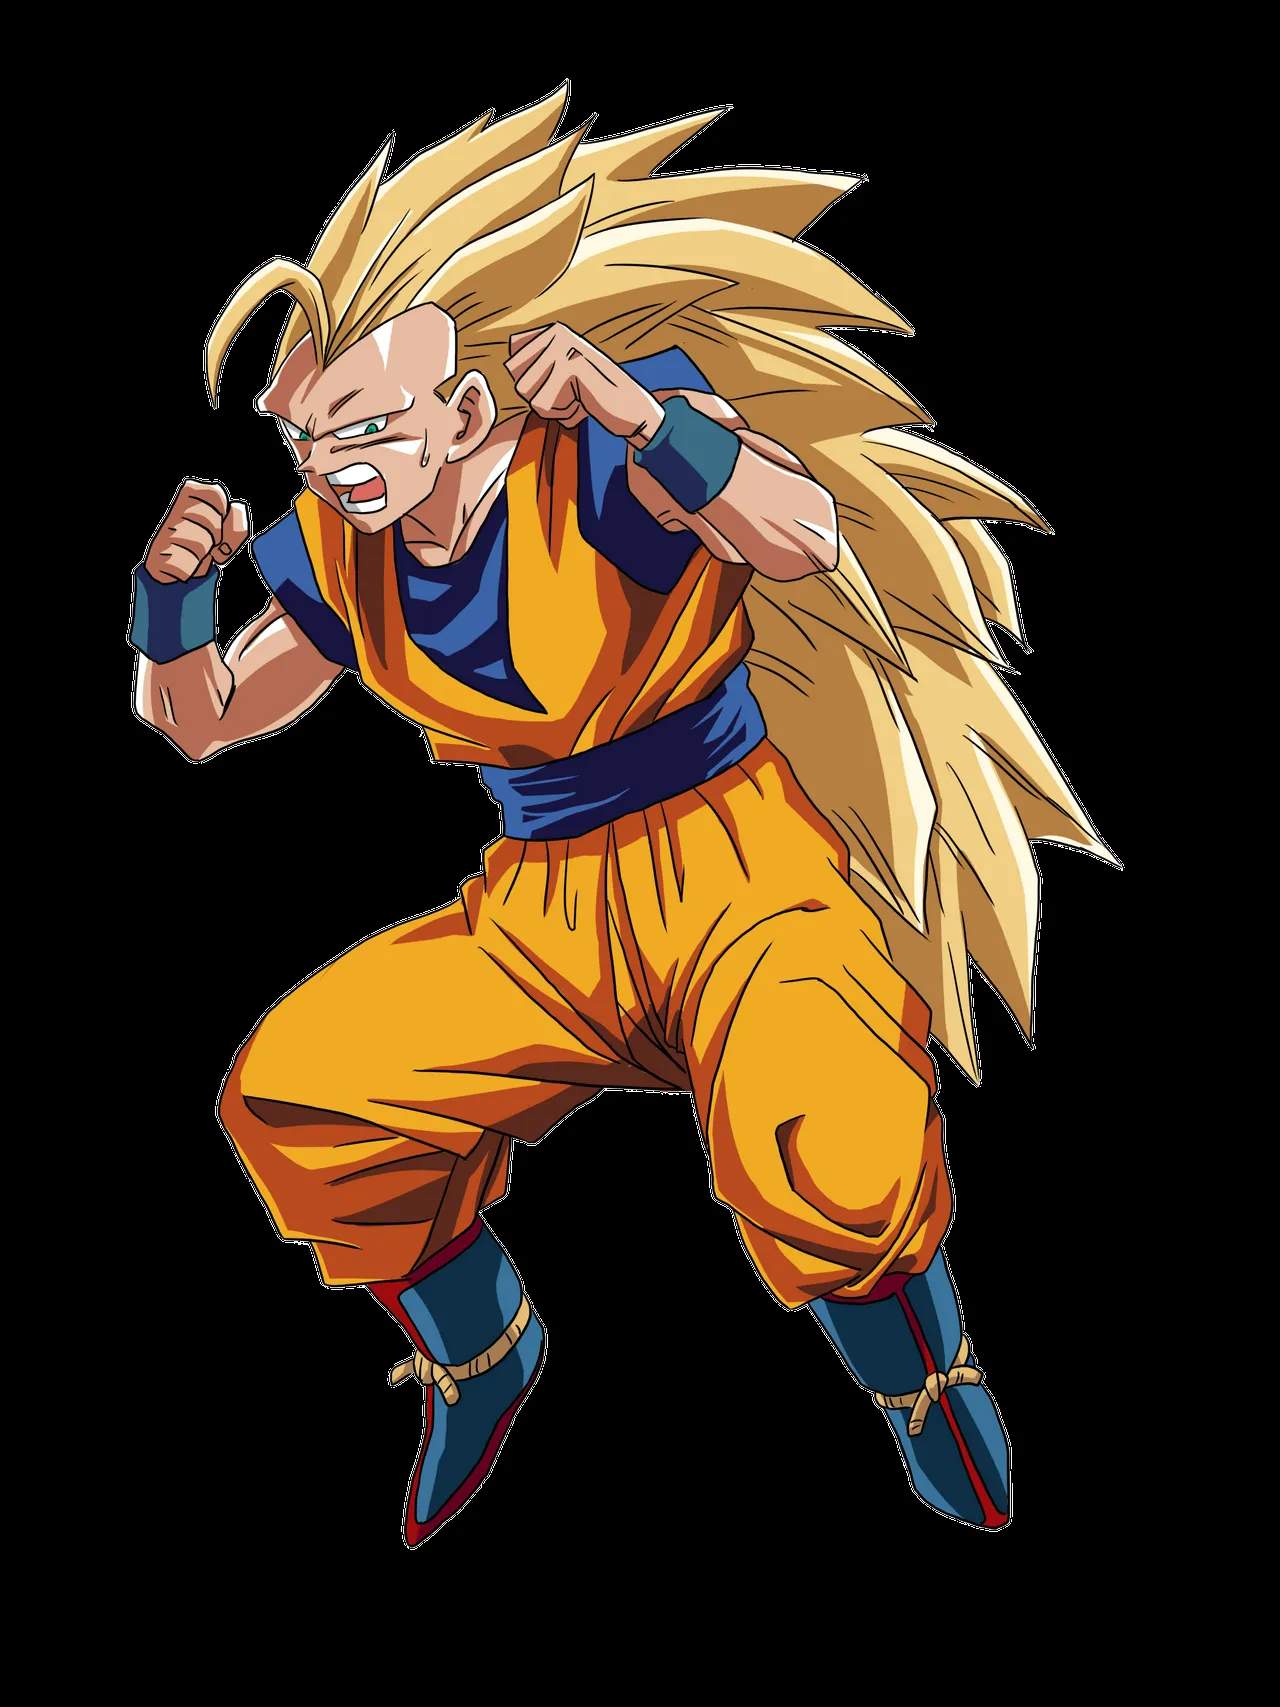 Super Saiyan 3 Goku by RuokDbz98 on DeviantArt